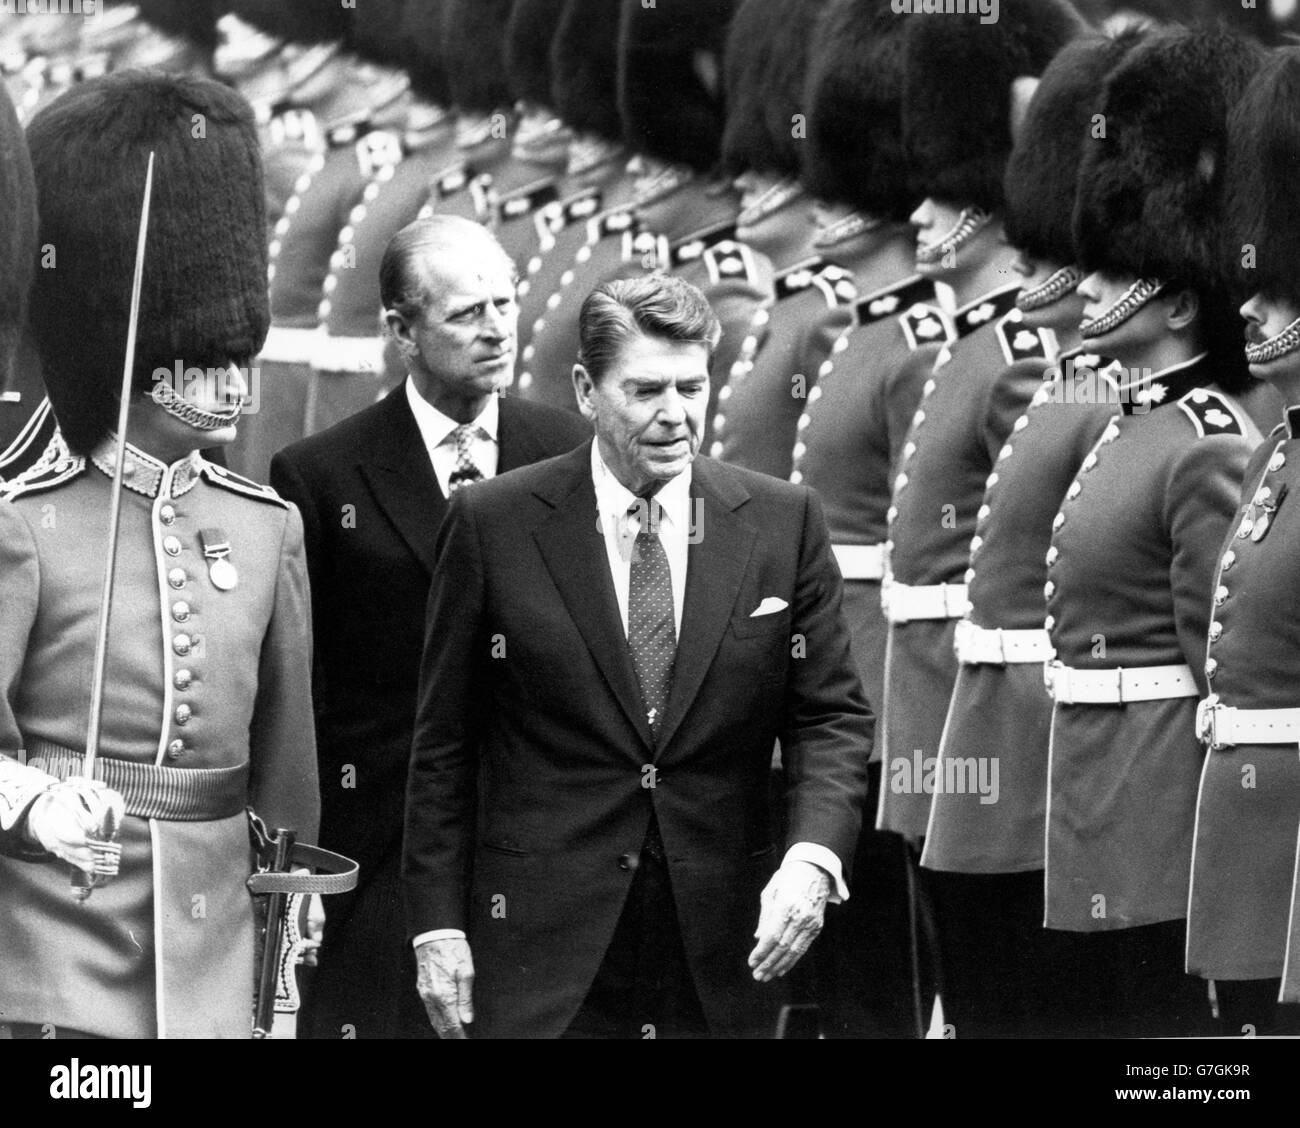 Le président Ronald Reagan inspecte la garde d'honneur des Grenadier Guards au château de Windsor, avec le duc d'Édimbourg derrière lui. Le Président et Mme Reagan sont arrivés par hélicoptère au début de leur visite en Grande-Bretagne. *numérisation basse résolution à partir de l'impression, haute résolution disponible sur demande* Banque D'Images